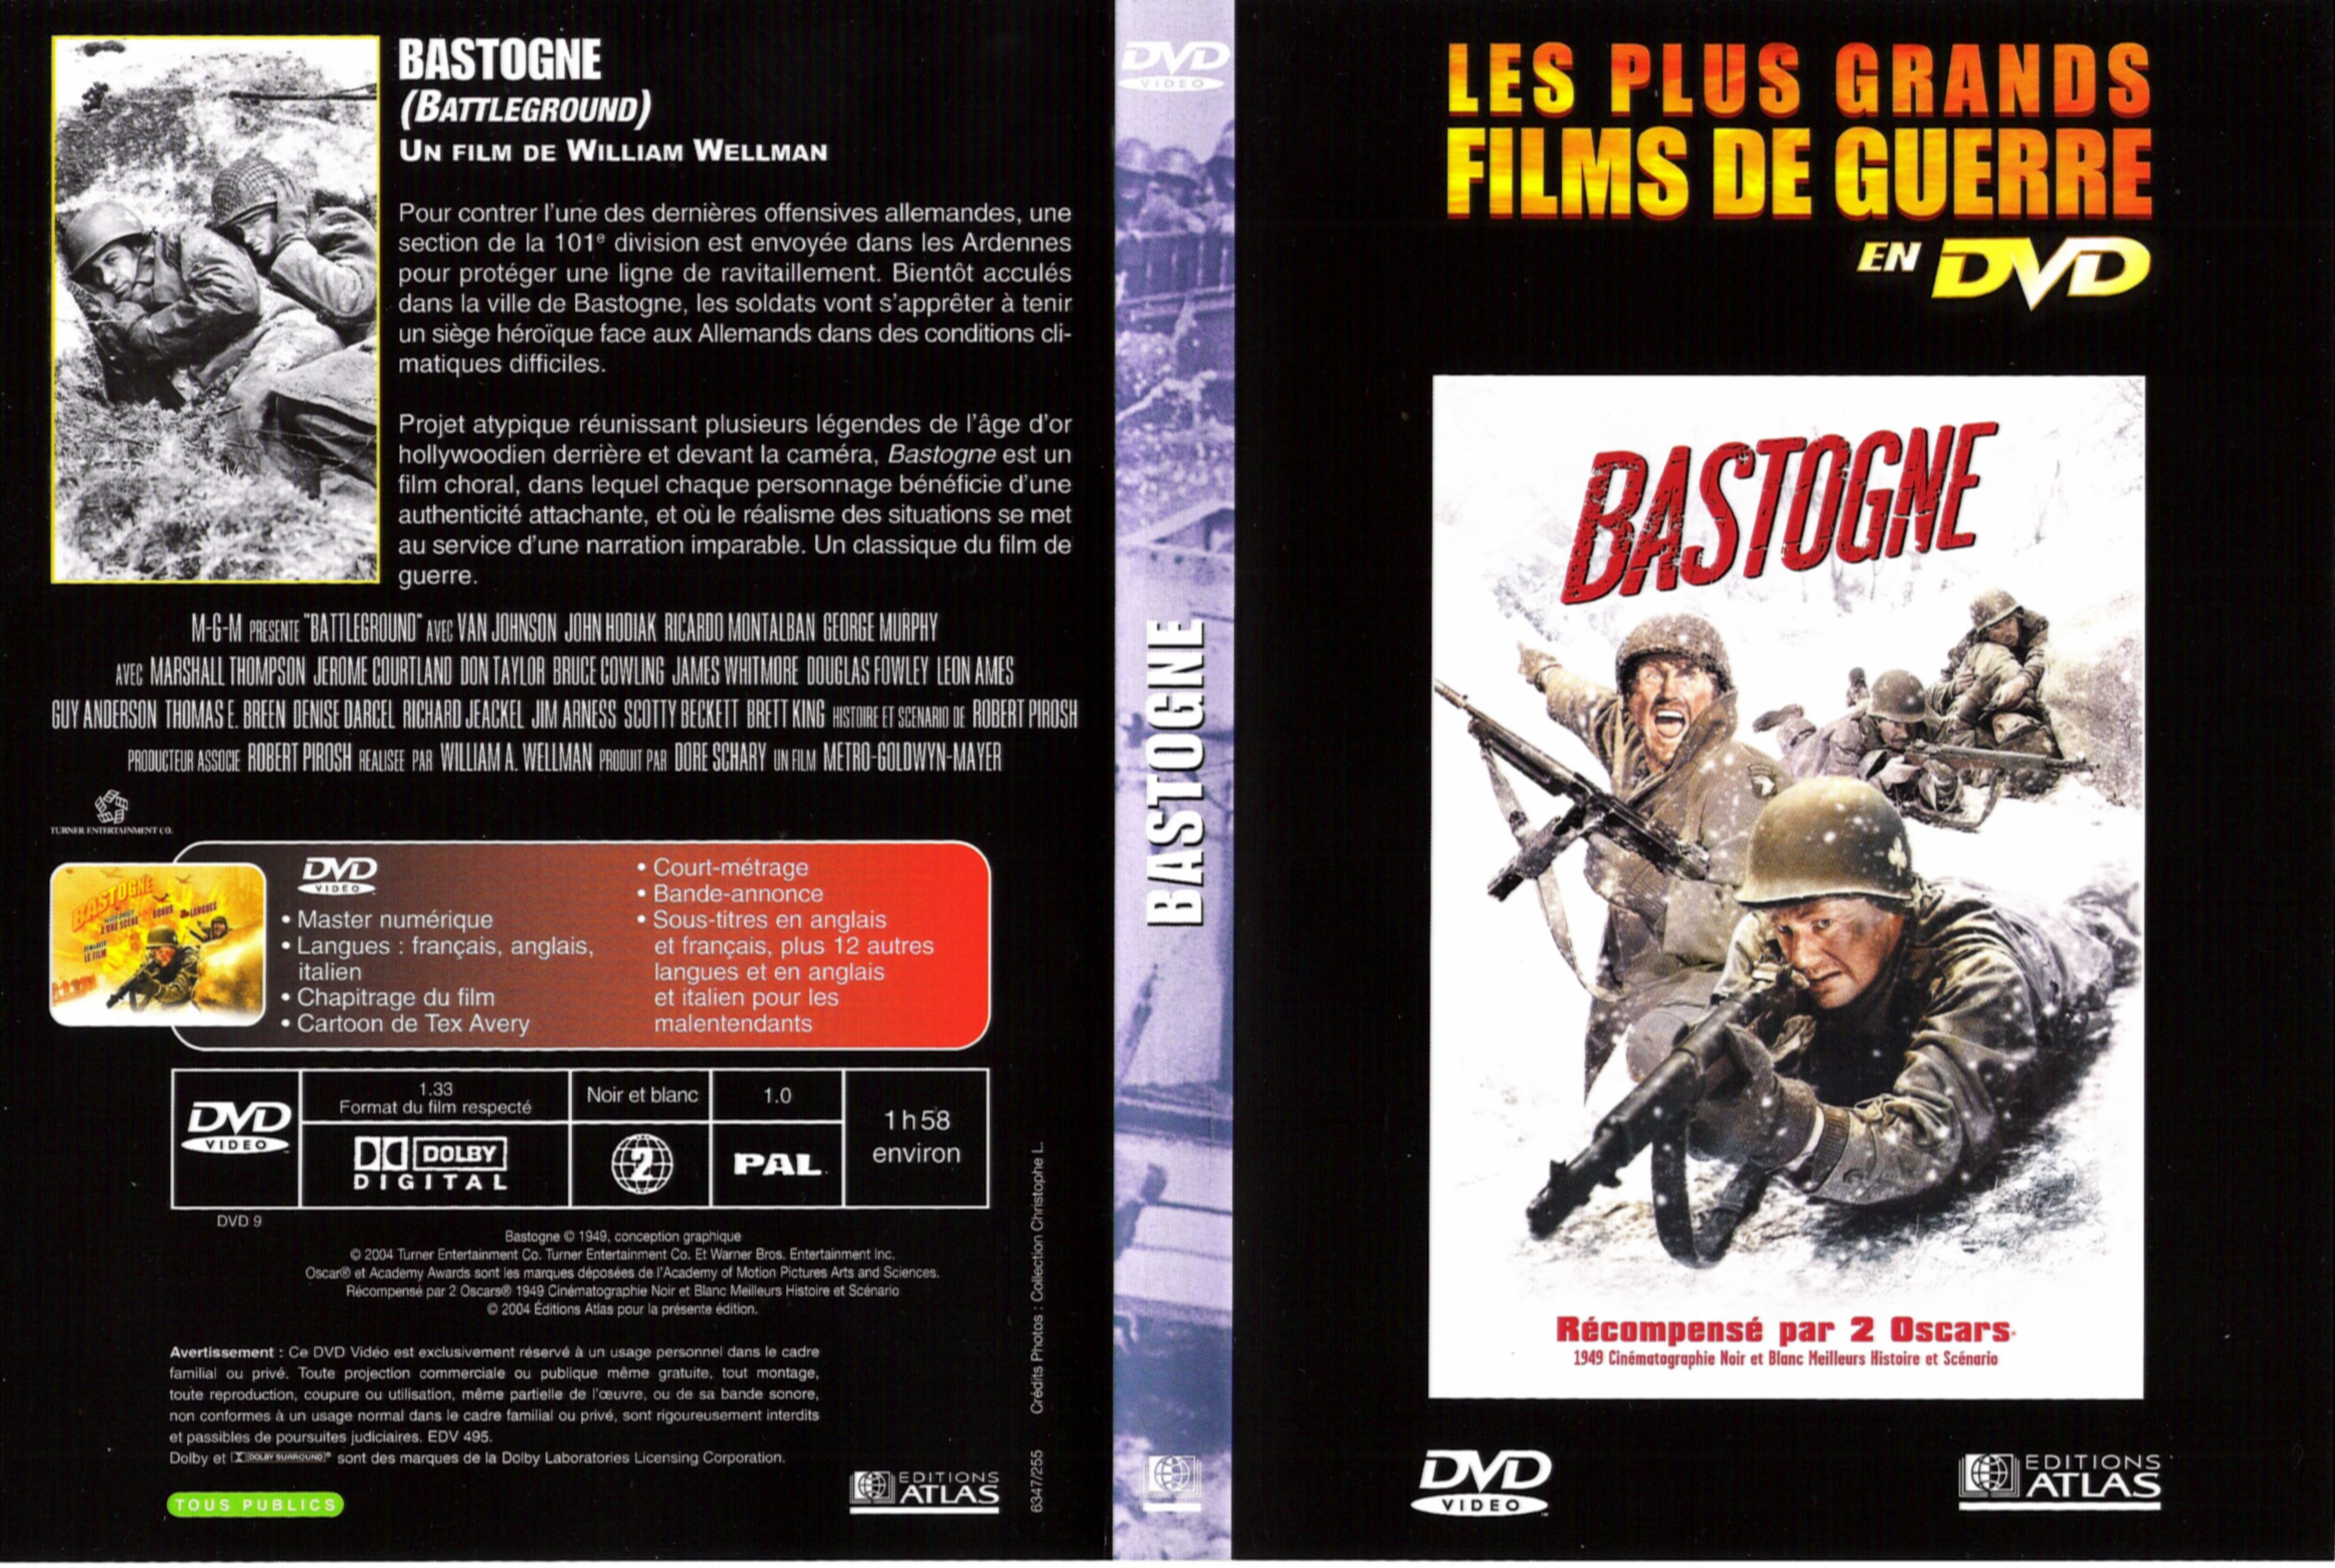 Jaquette DVD Bastogne